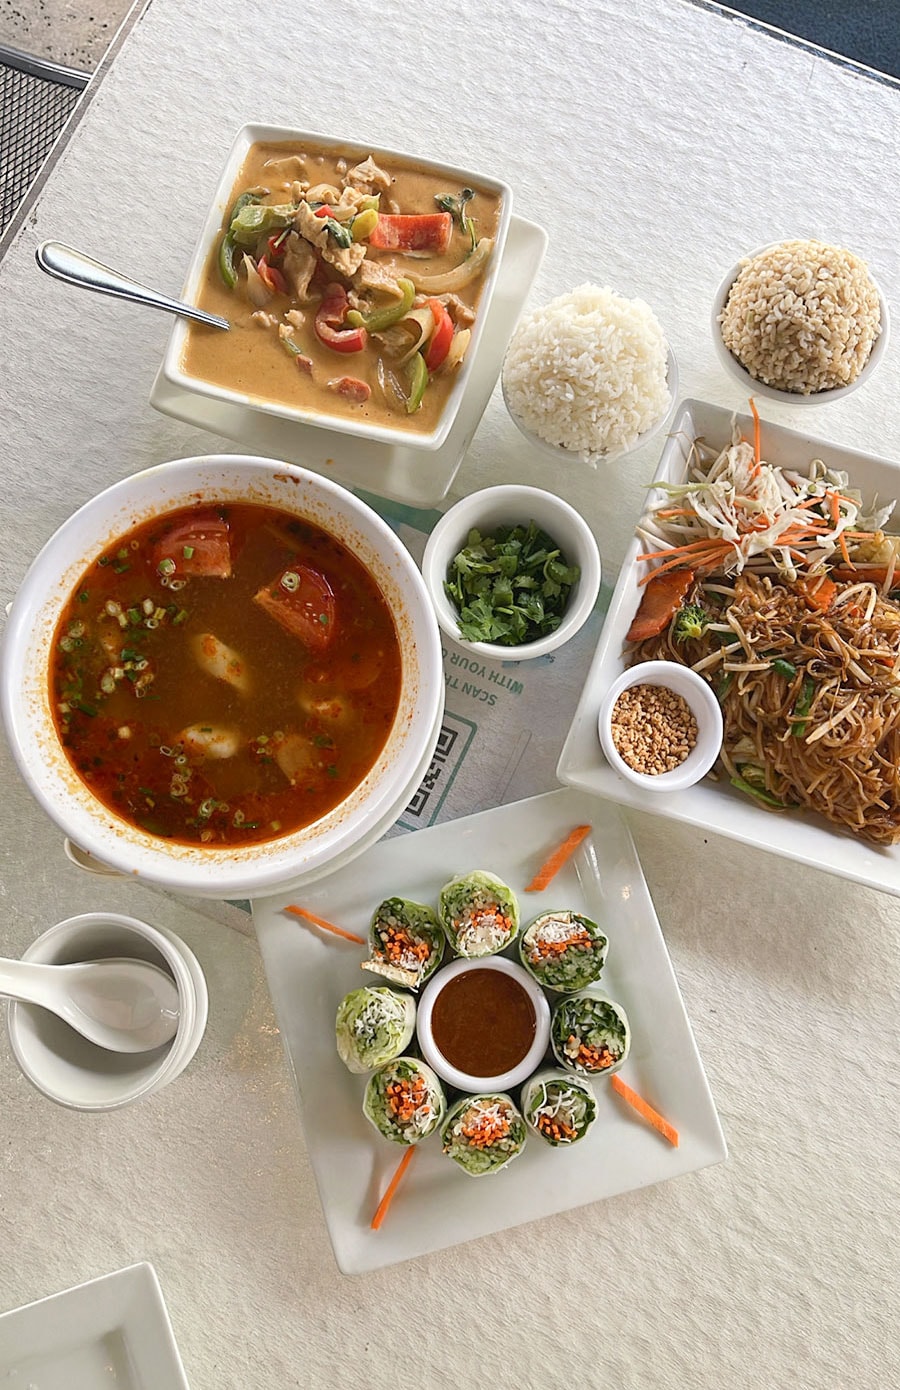 マイレズ・タイ・ビストロの多彩な料理の数々。